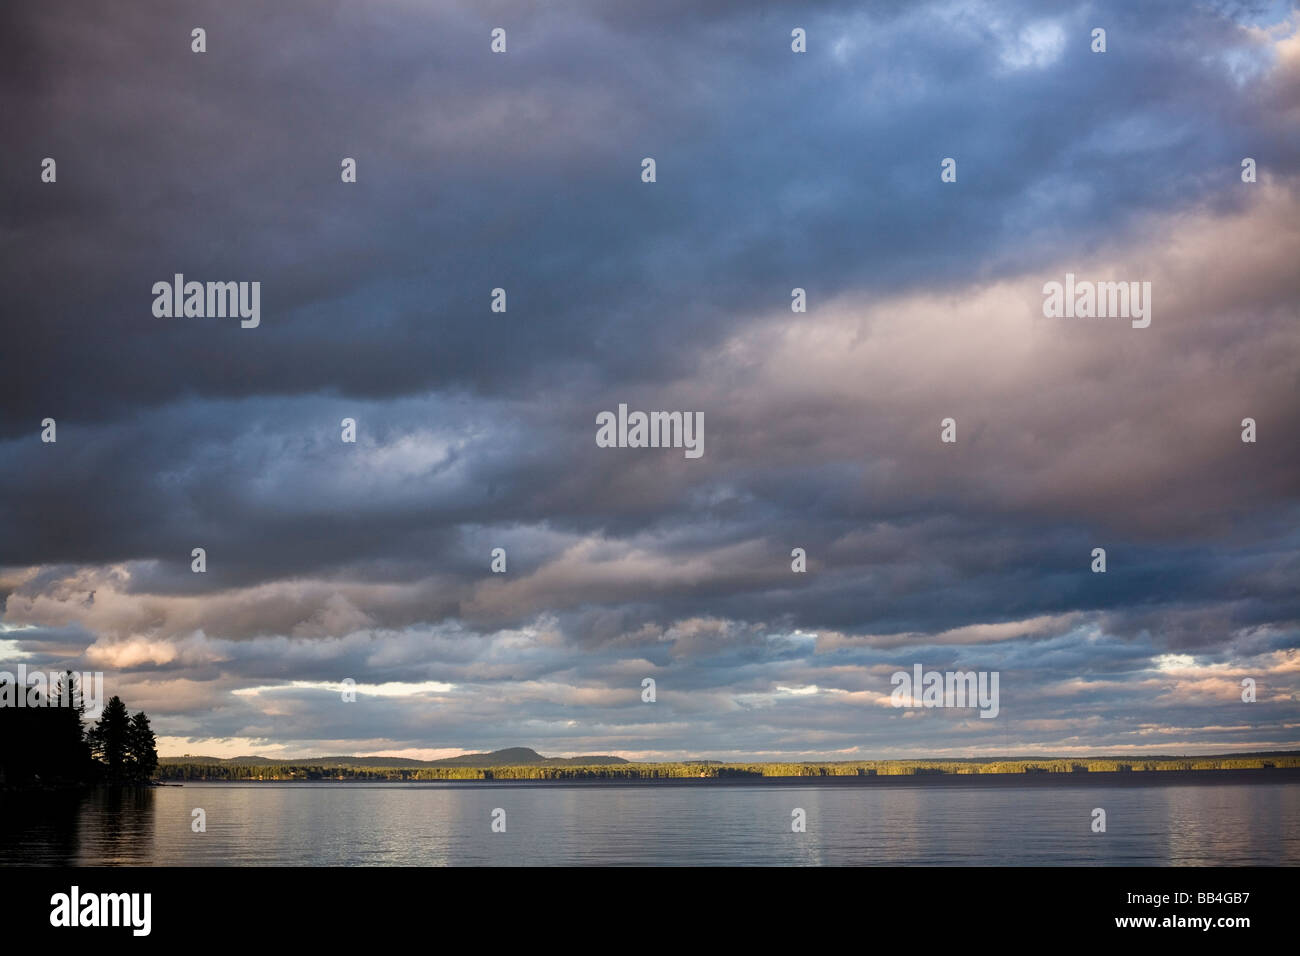 Dramatische, blaue Wolken bilden eine dicke Decke über dem ruhigen Wasser der Sebago See. Stockfoto